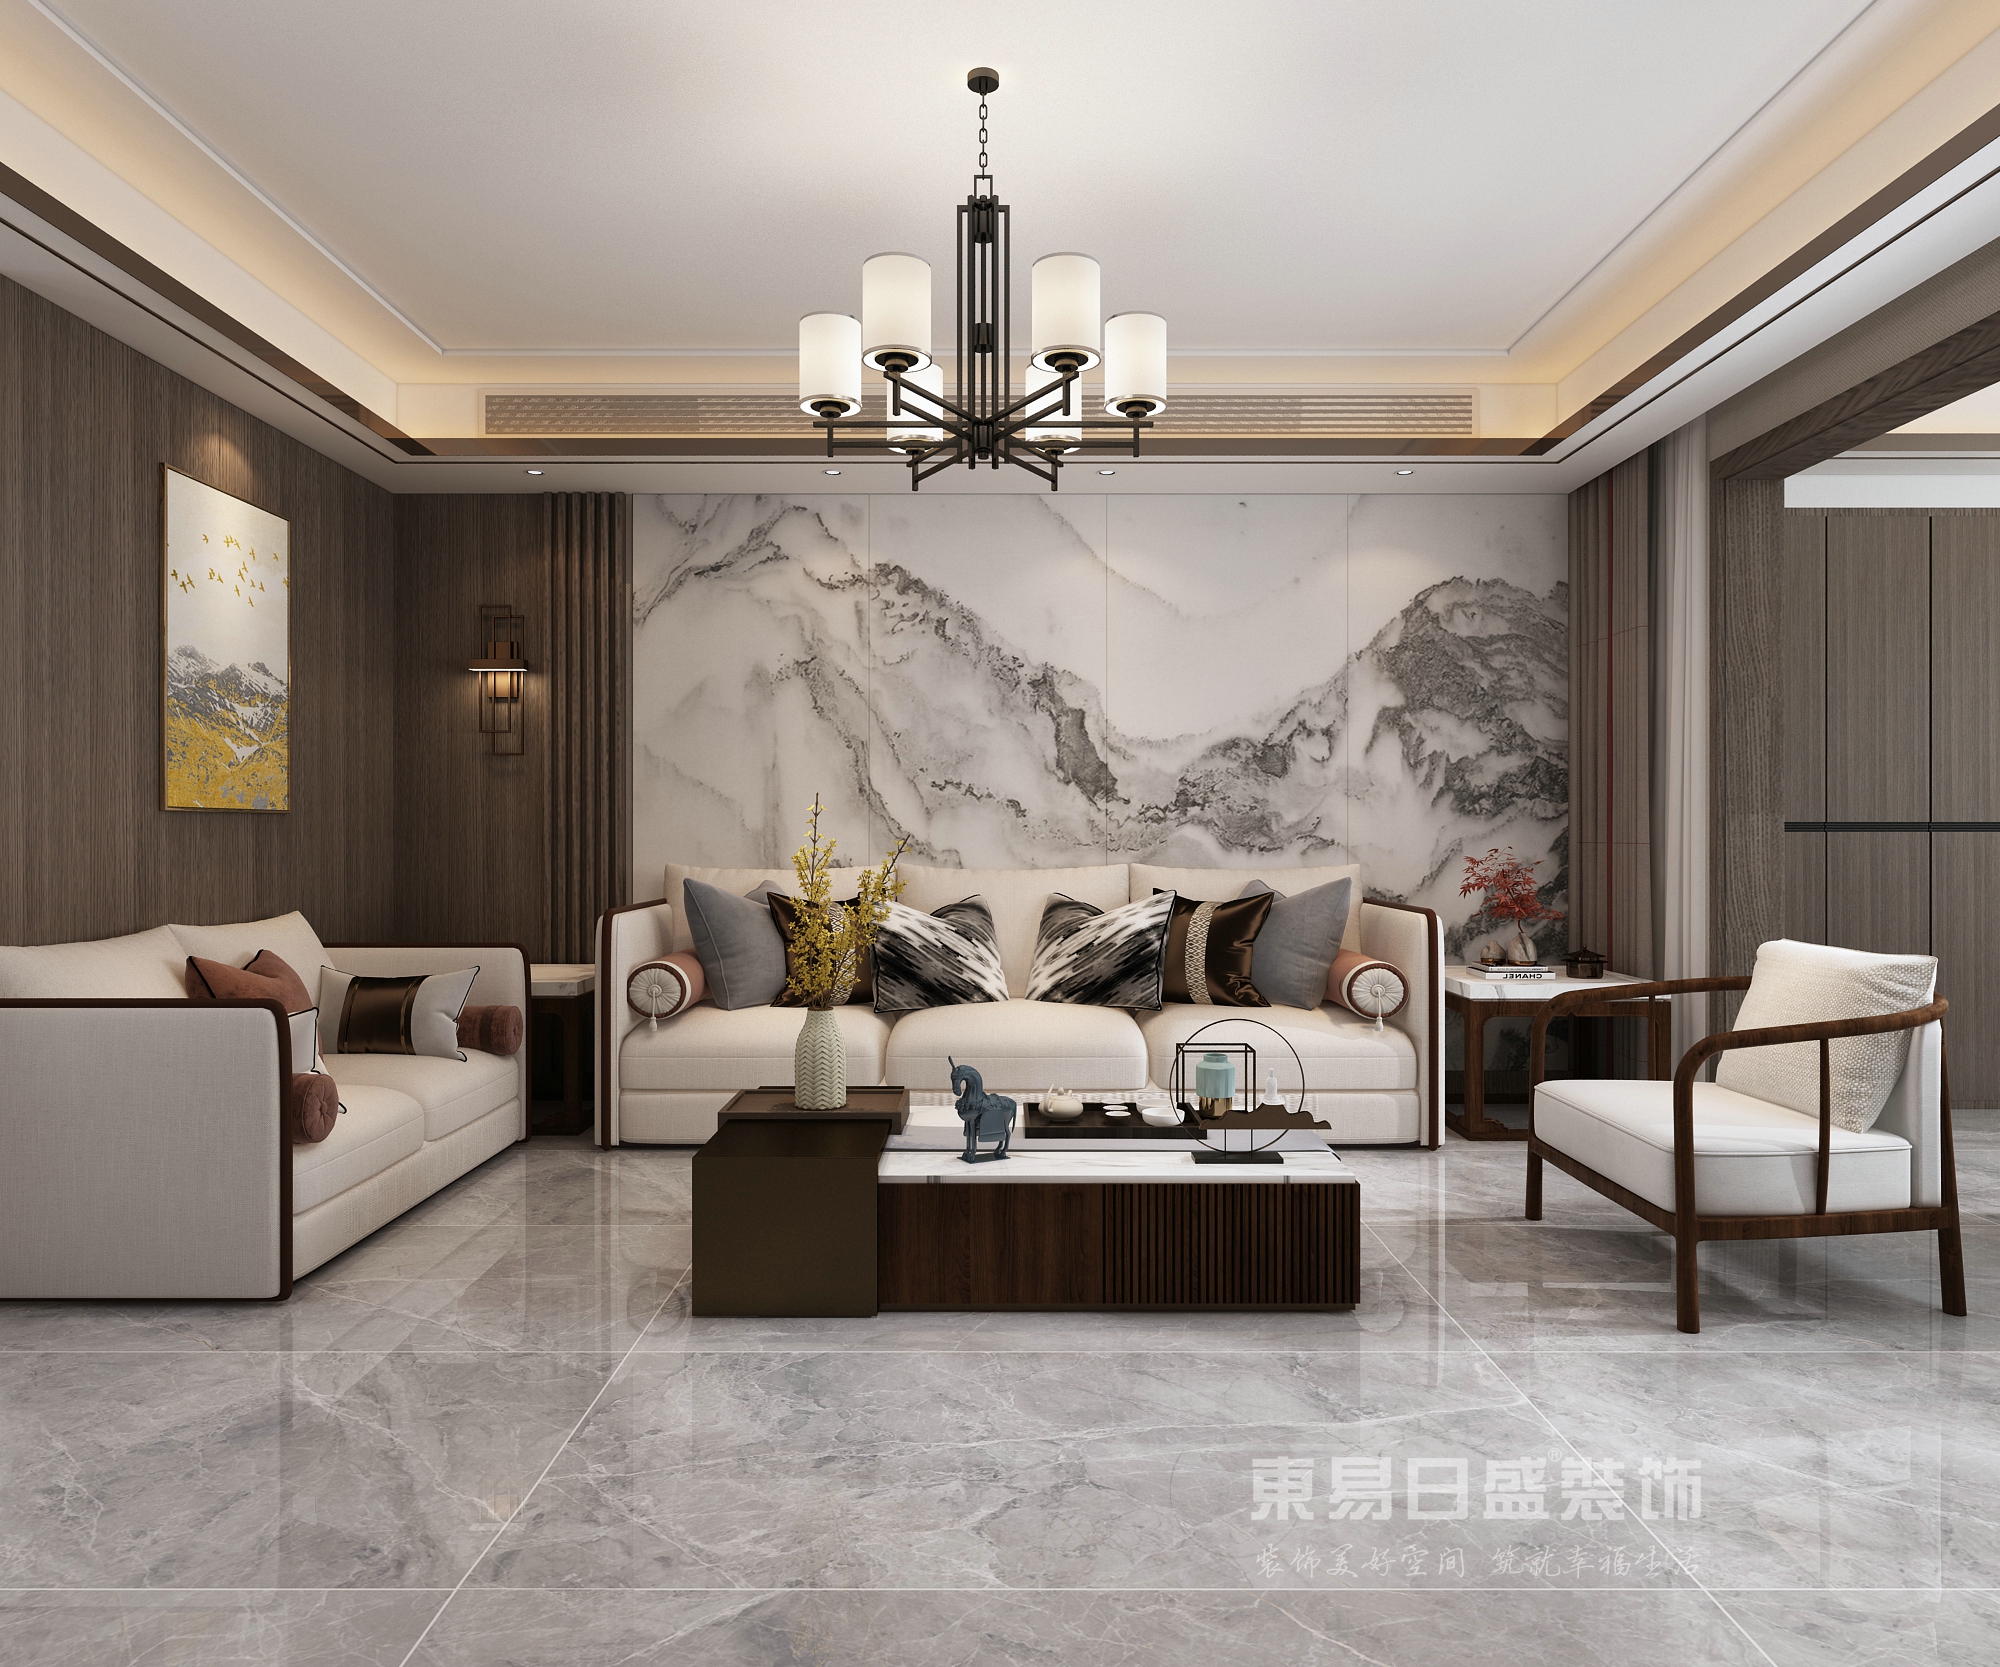 210㎡新中式风格温馨雅致的家居空间